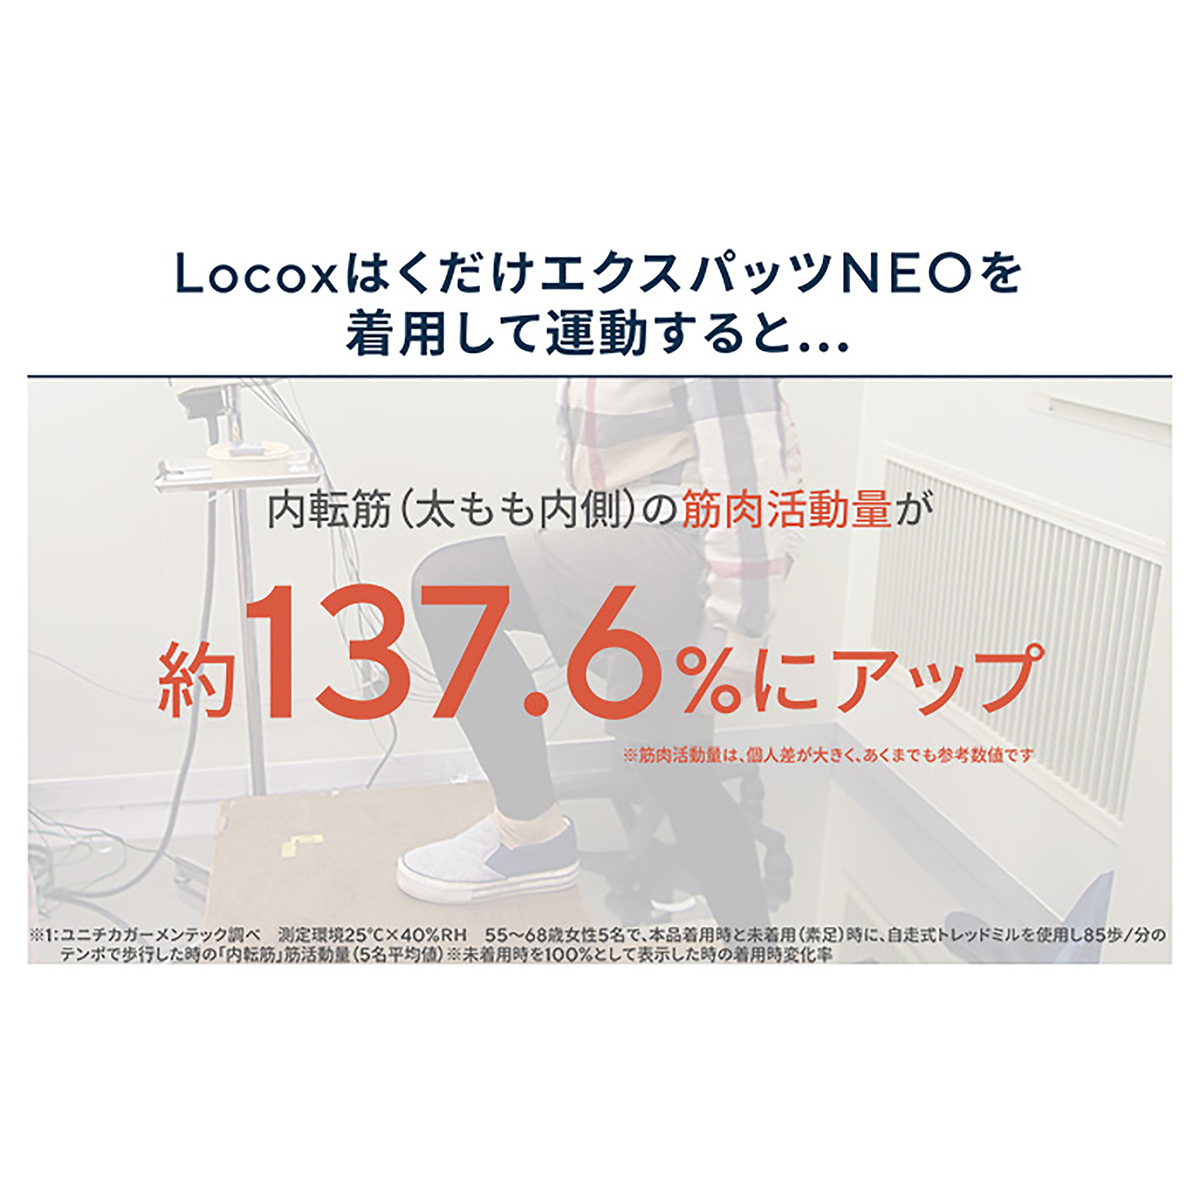 Locox はくだけエクスパッツNEO 婦人用 ロコックス - QVC.jp